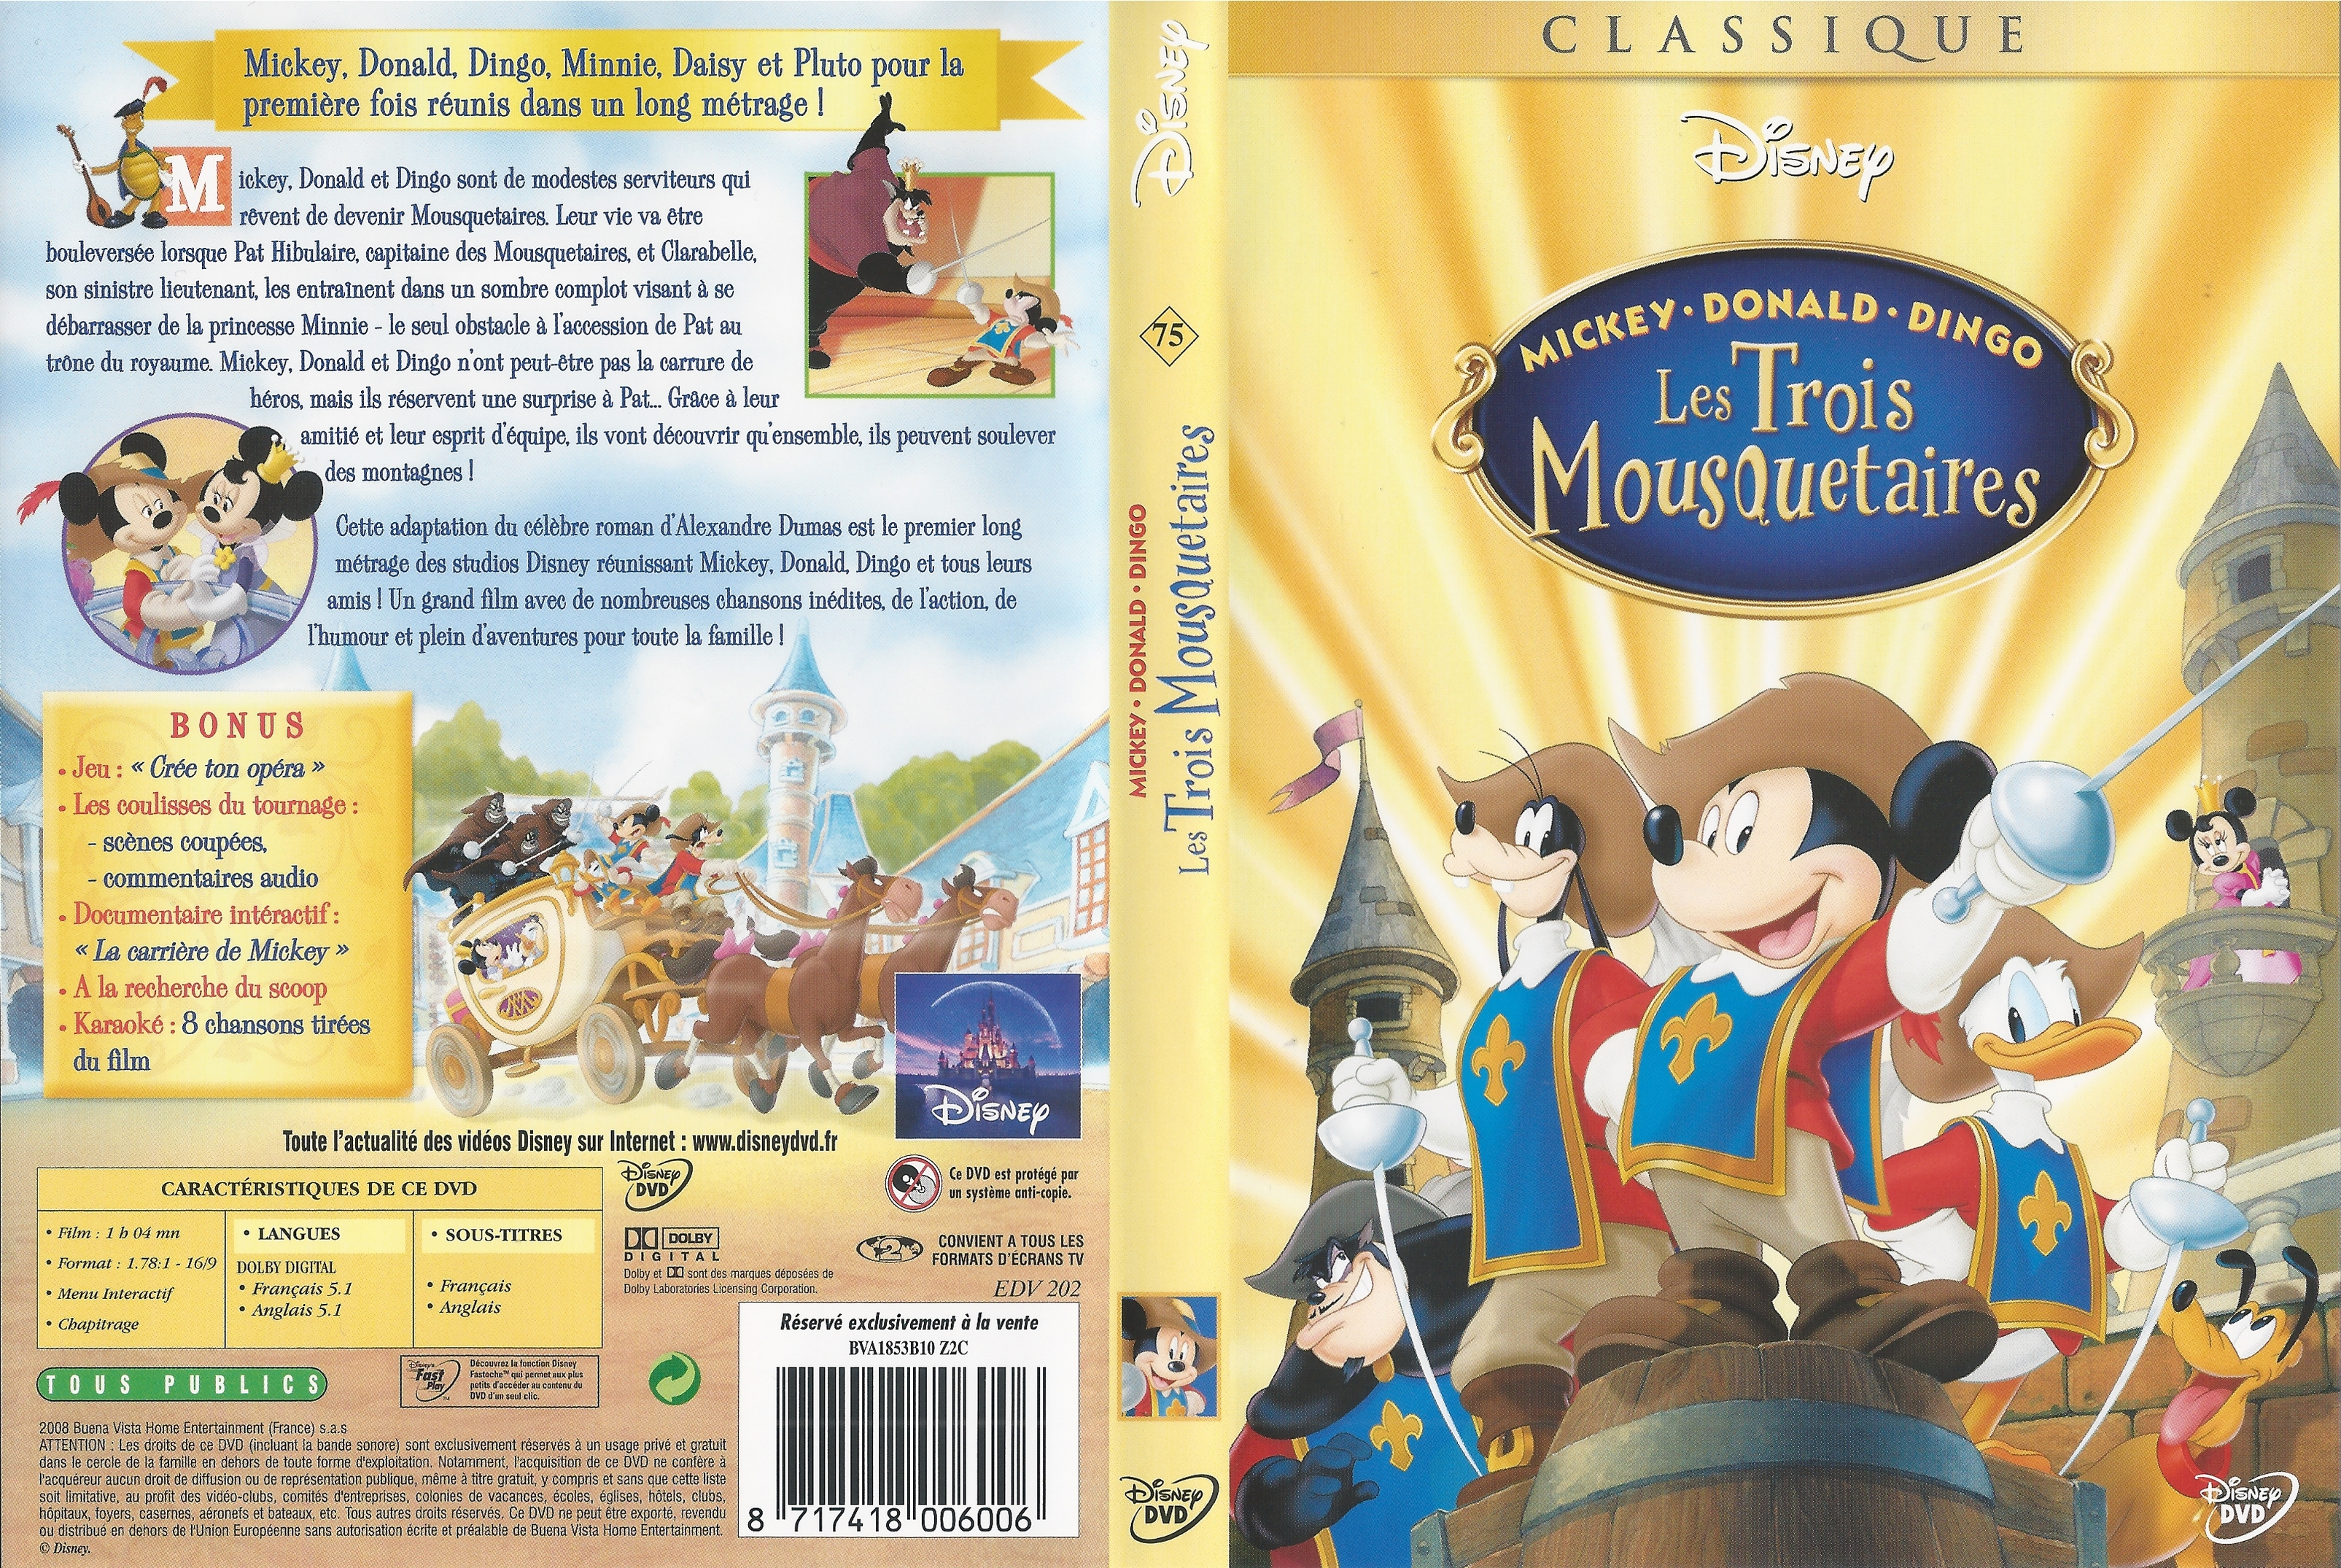 Jaquette DVD Les Trois Mousquetaires (Disney) v2